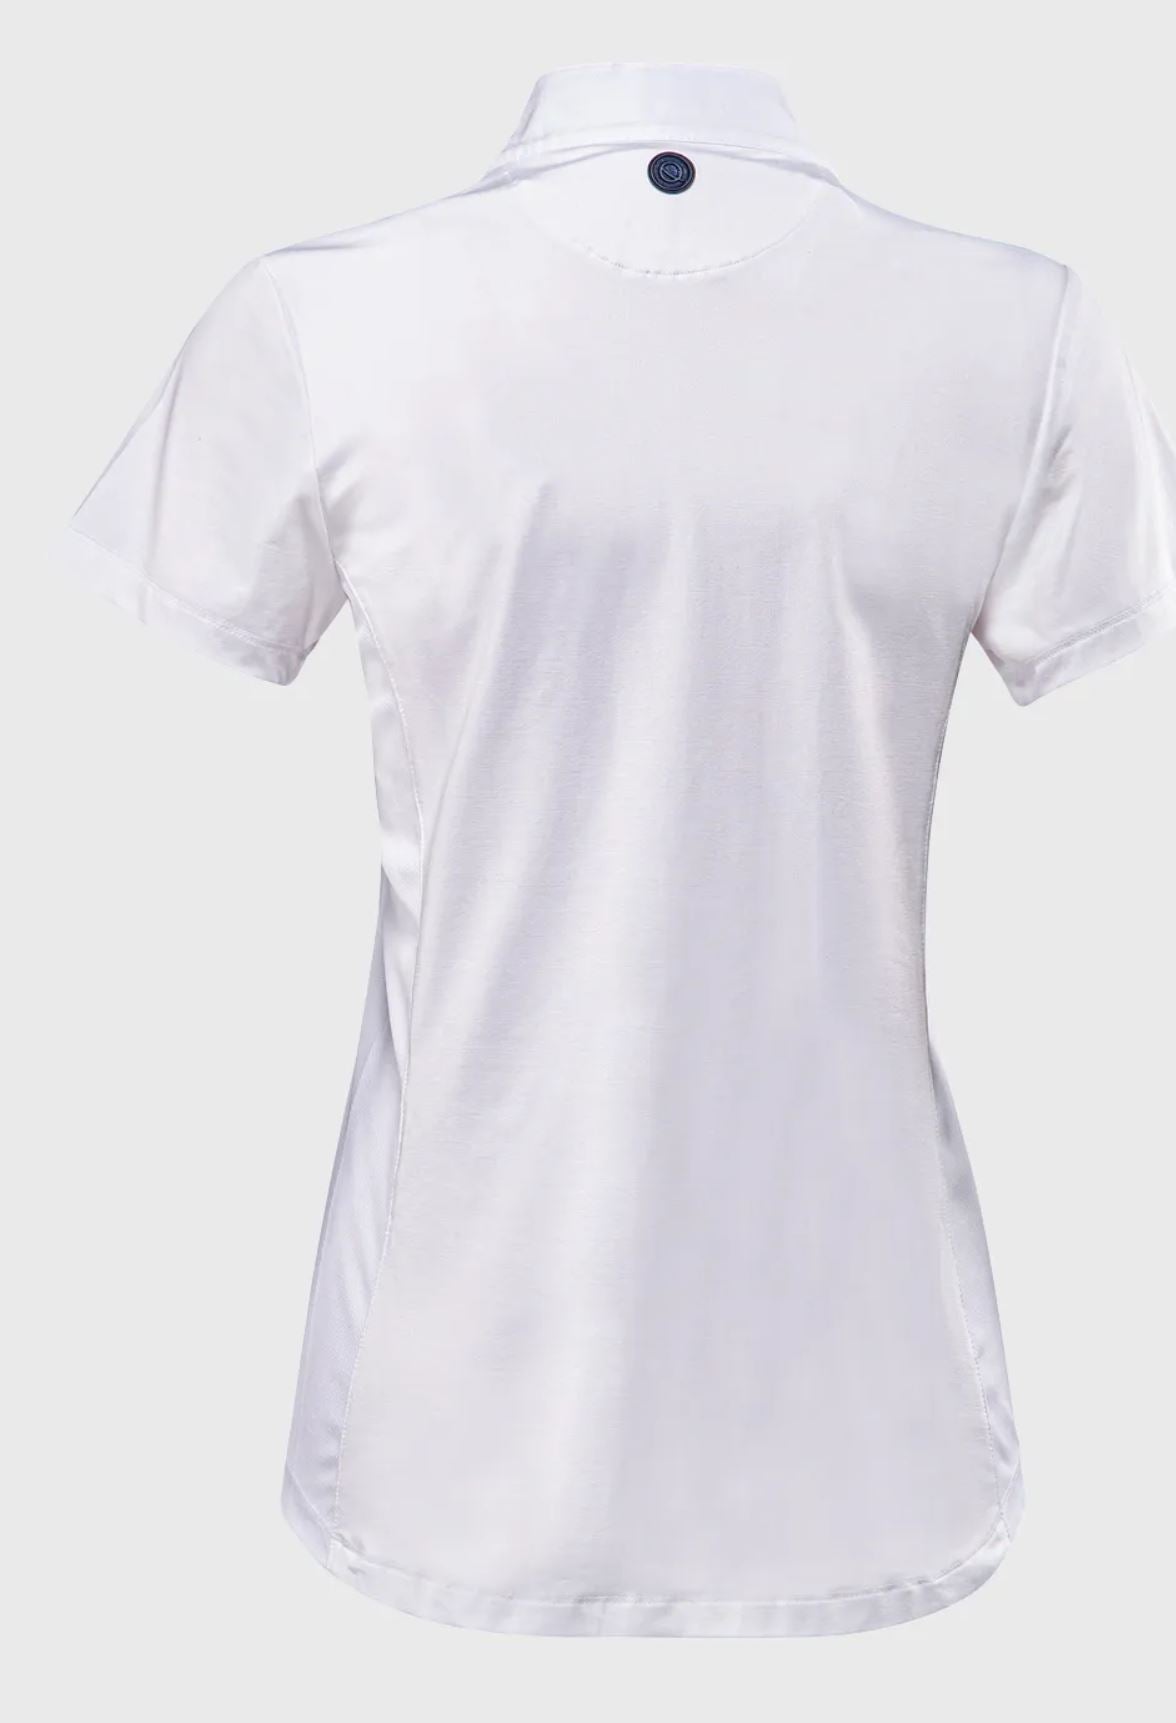 Eqode Womens Short Sleeve Sleeve Show Shirt